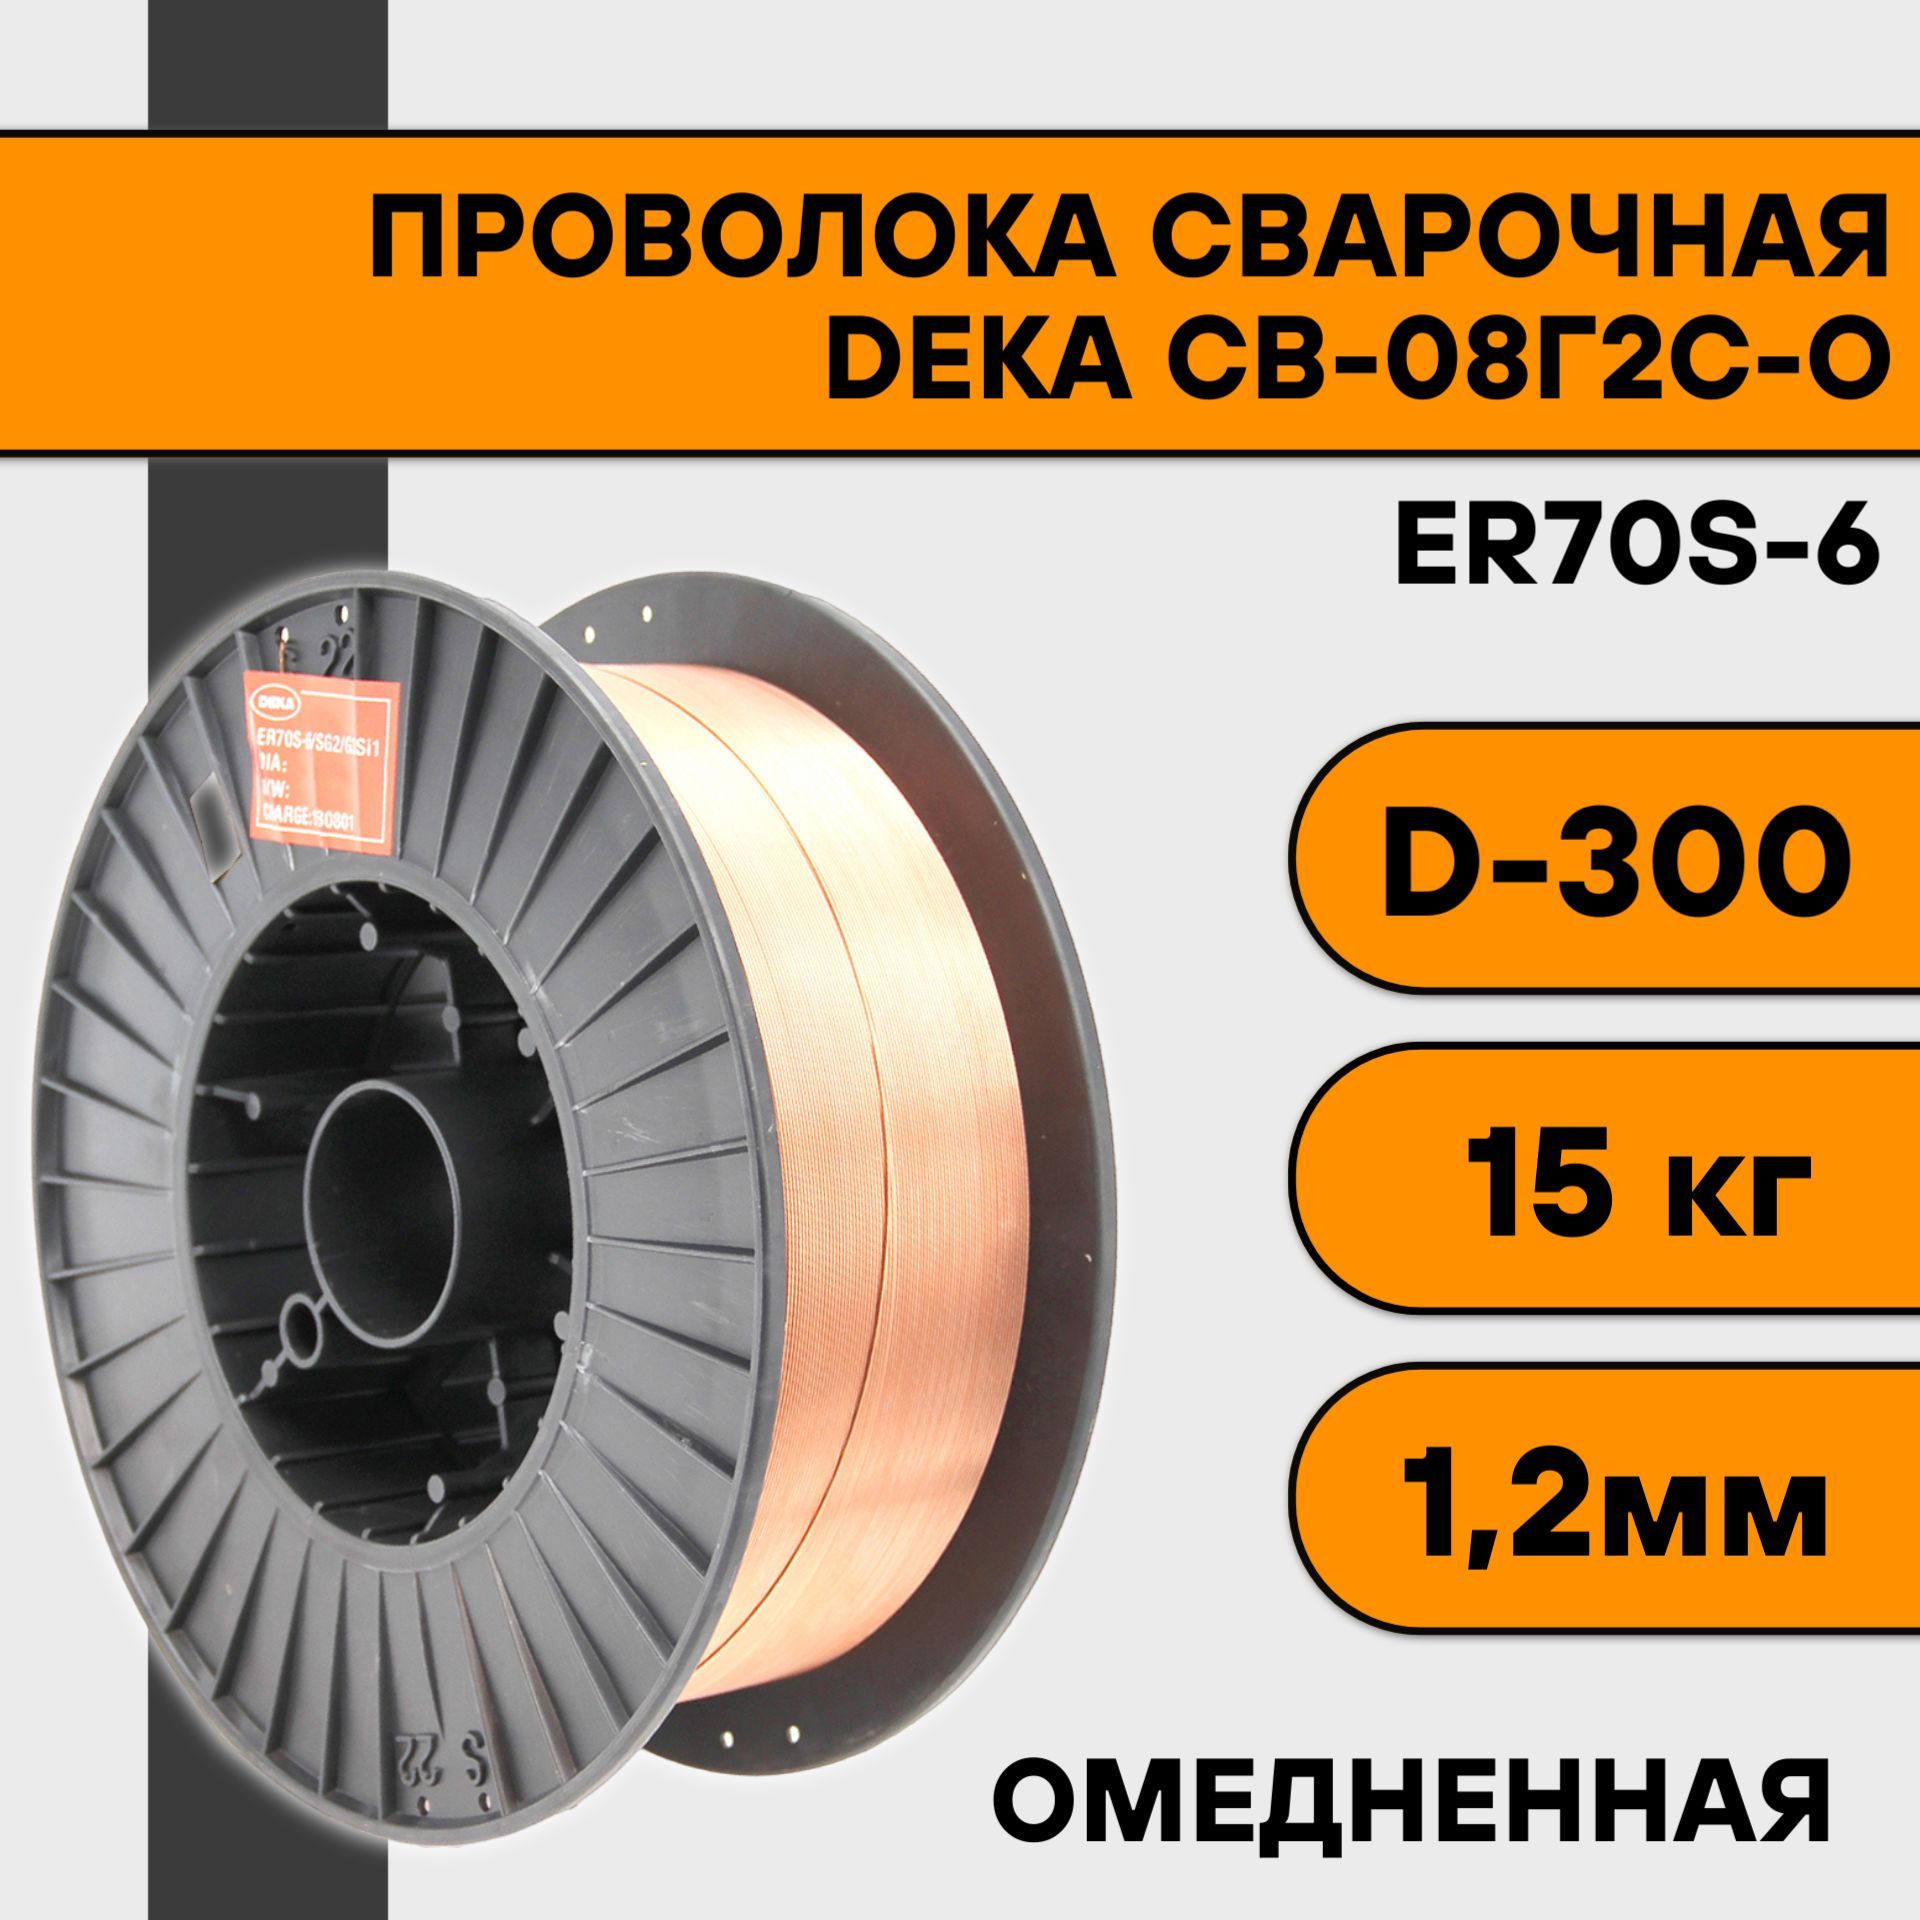 Сварочная проволока омедненная Deka ER70S-6 ф 1,2 мм (15 кг) D300 проволока сварочная омеднённая 1 2 мм 5 кг er70s 6